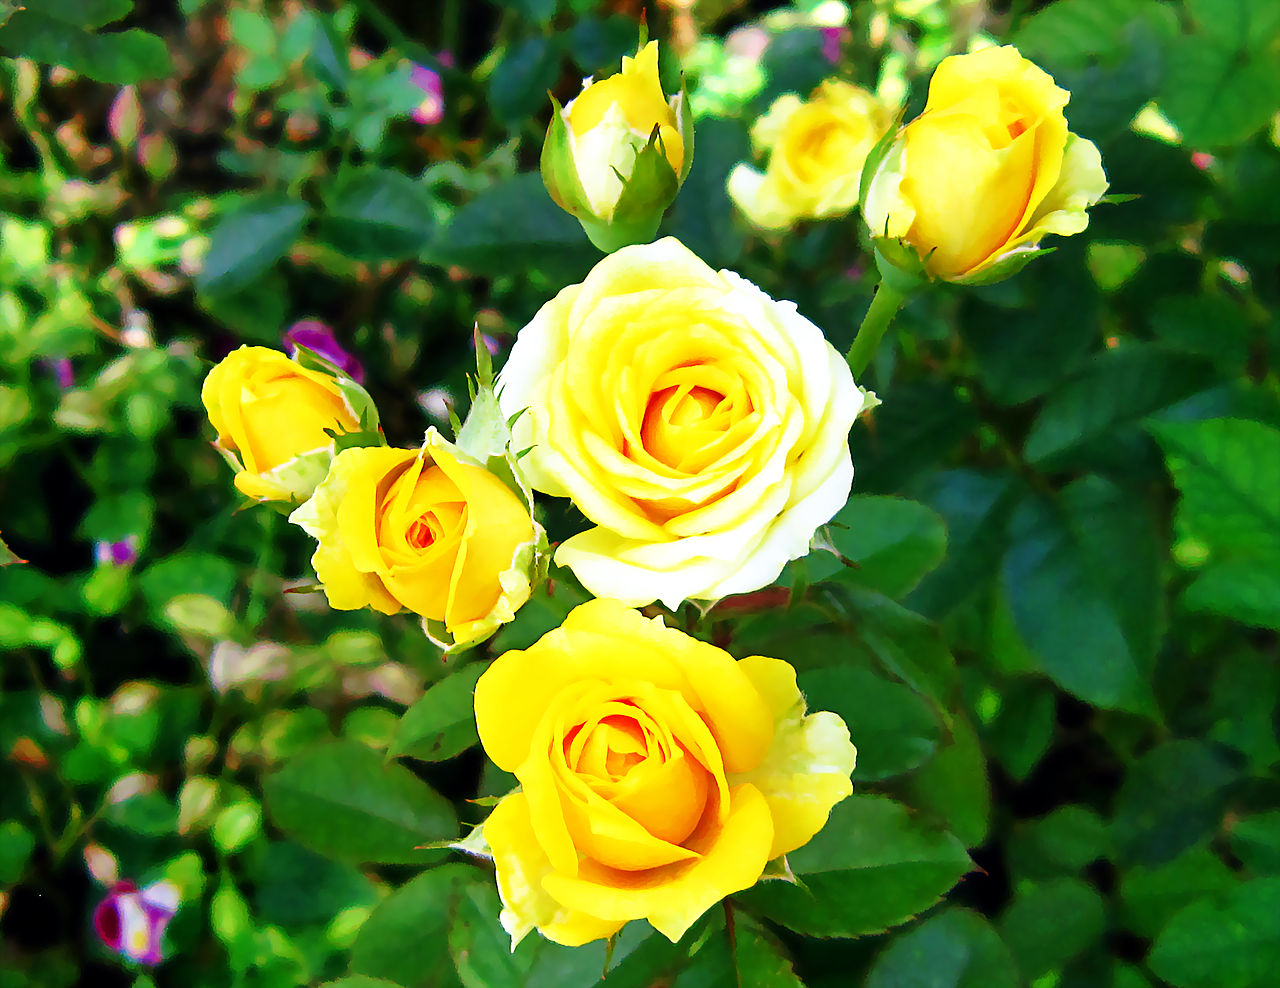 Hãy cùng ngắm nhìn những bông hoa hồng vàng rực rỡ - một biểu tượng của sự tình yêu và sự trân trọng tinh thần. Những bức tranh này tạo nên một không gian nghệ thuật tươi tắn và ấm áp.